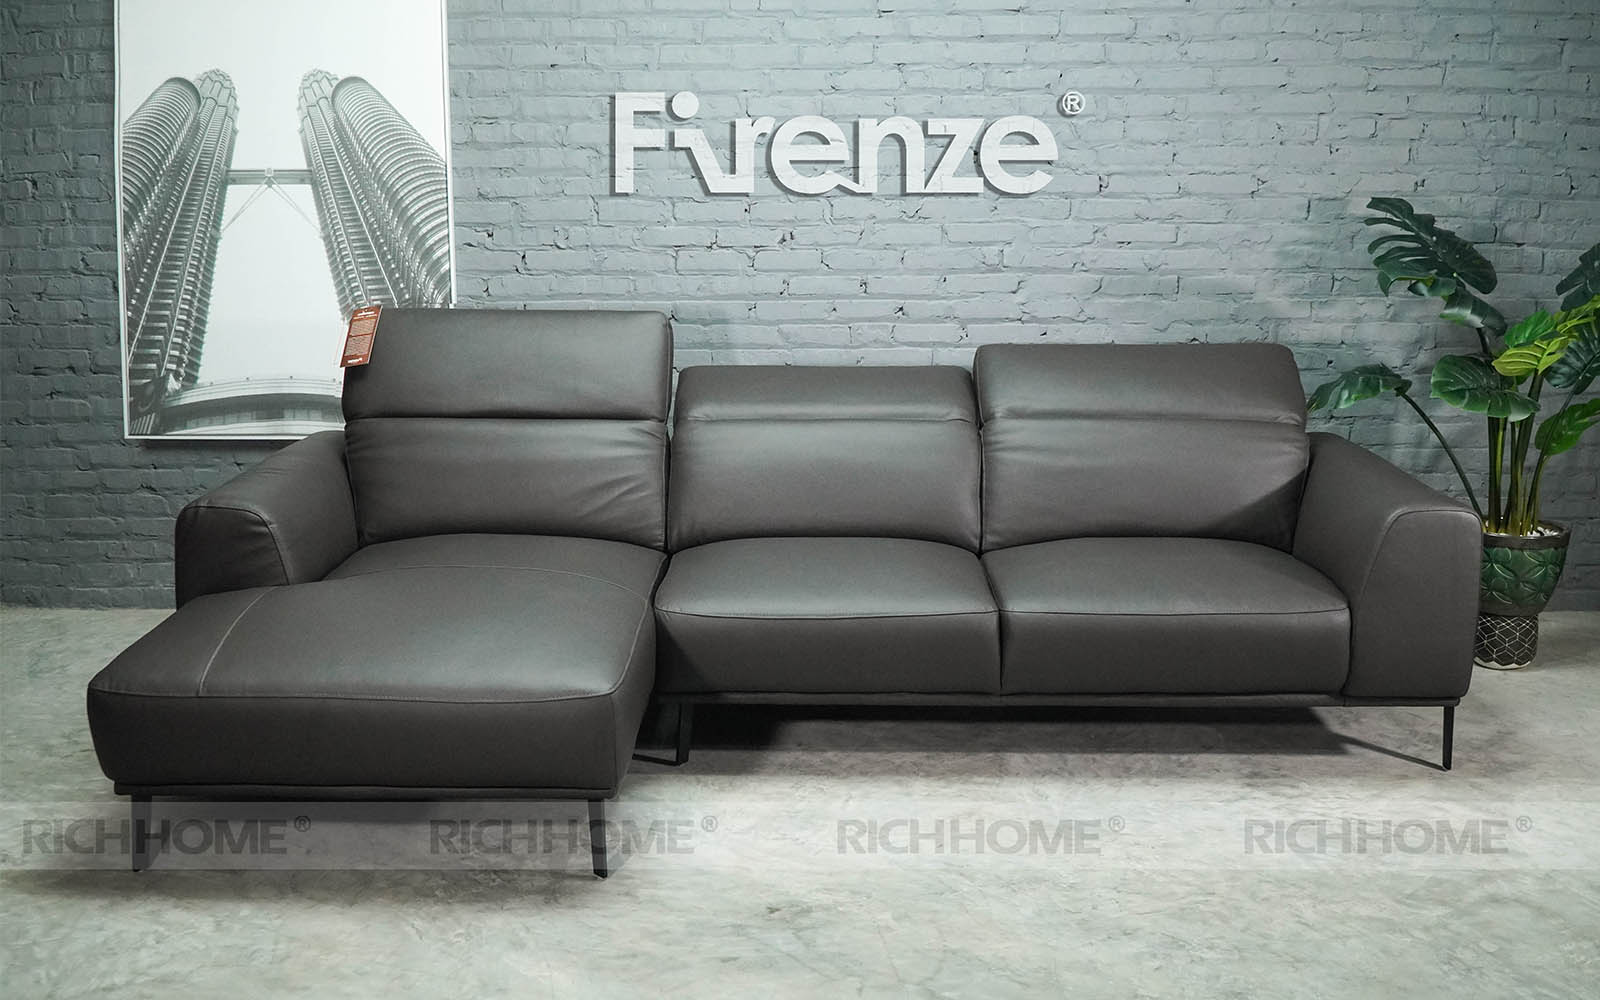 [++100] Các mẫu sofa tích hợp đa chức năng kiểu dáng tuyệt đẹp - Ảnh 2